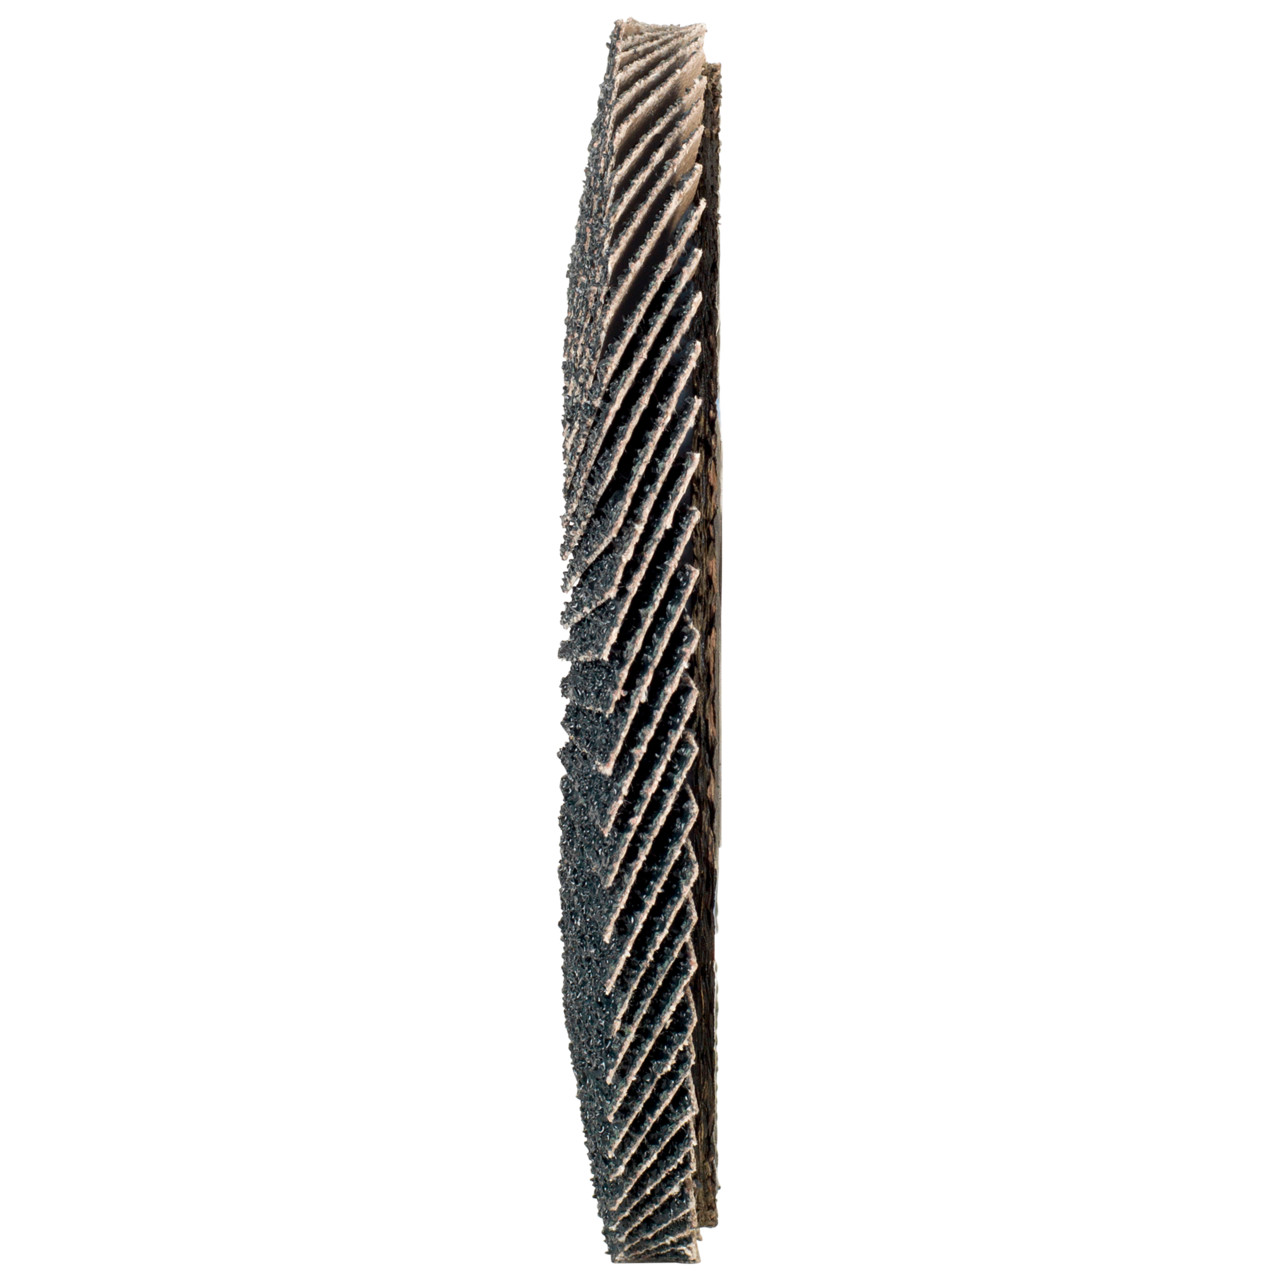 Rondella dentata Tyrolit DxH 150x22.2 2in1 per acciaio e acciaio inox, P60, forma: 27A - versione offset (versione con corpo portante in fibra di vetro), Art. 519213